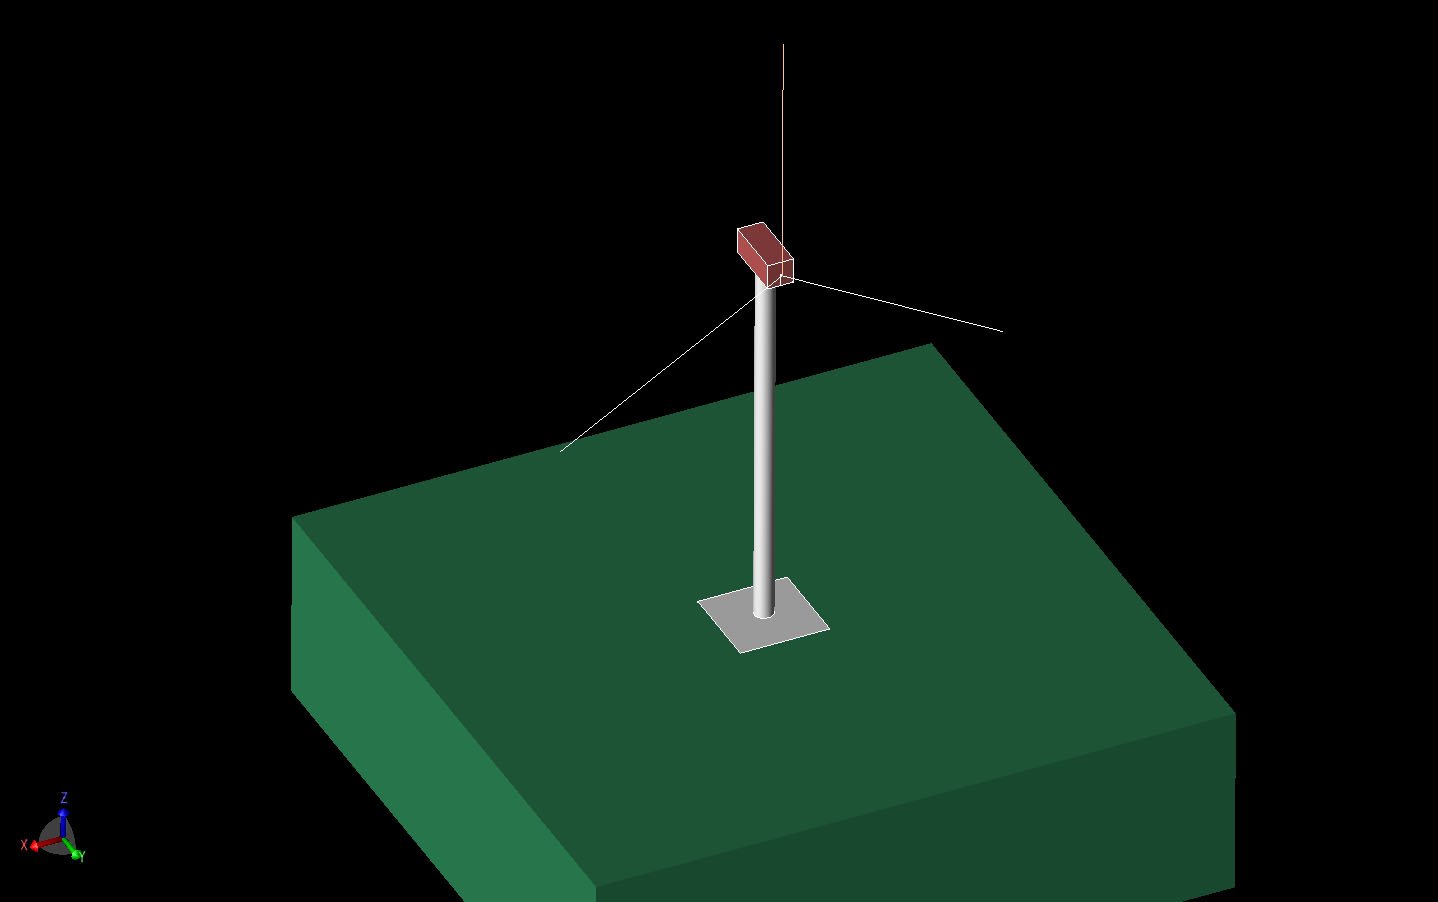 図1損失地盤の上にある風力タービンタワーの3次元CAD図。タワーの高さは60m、ブレードの長さは40m。垂直軸はZ、ナセルの長軸はY。